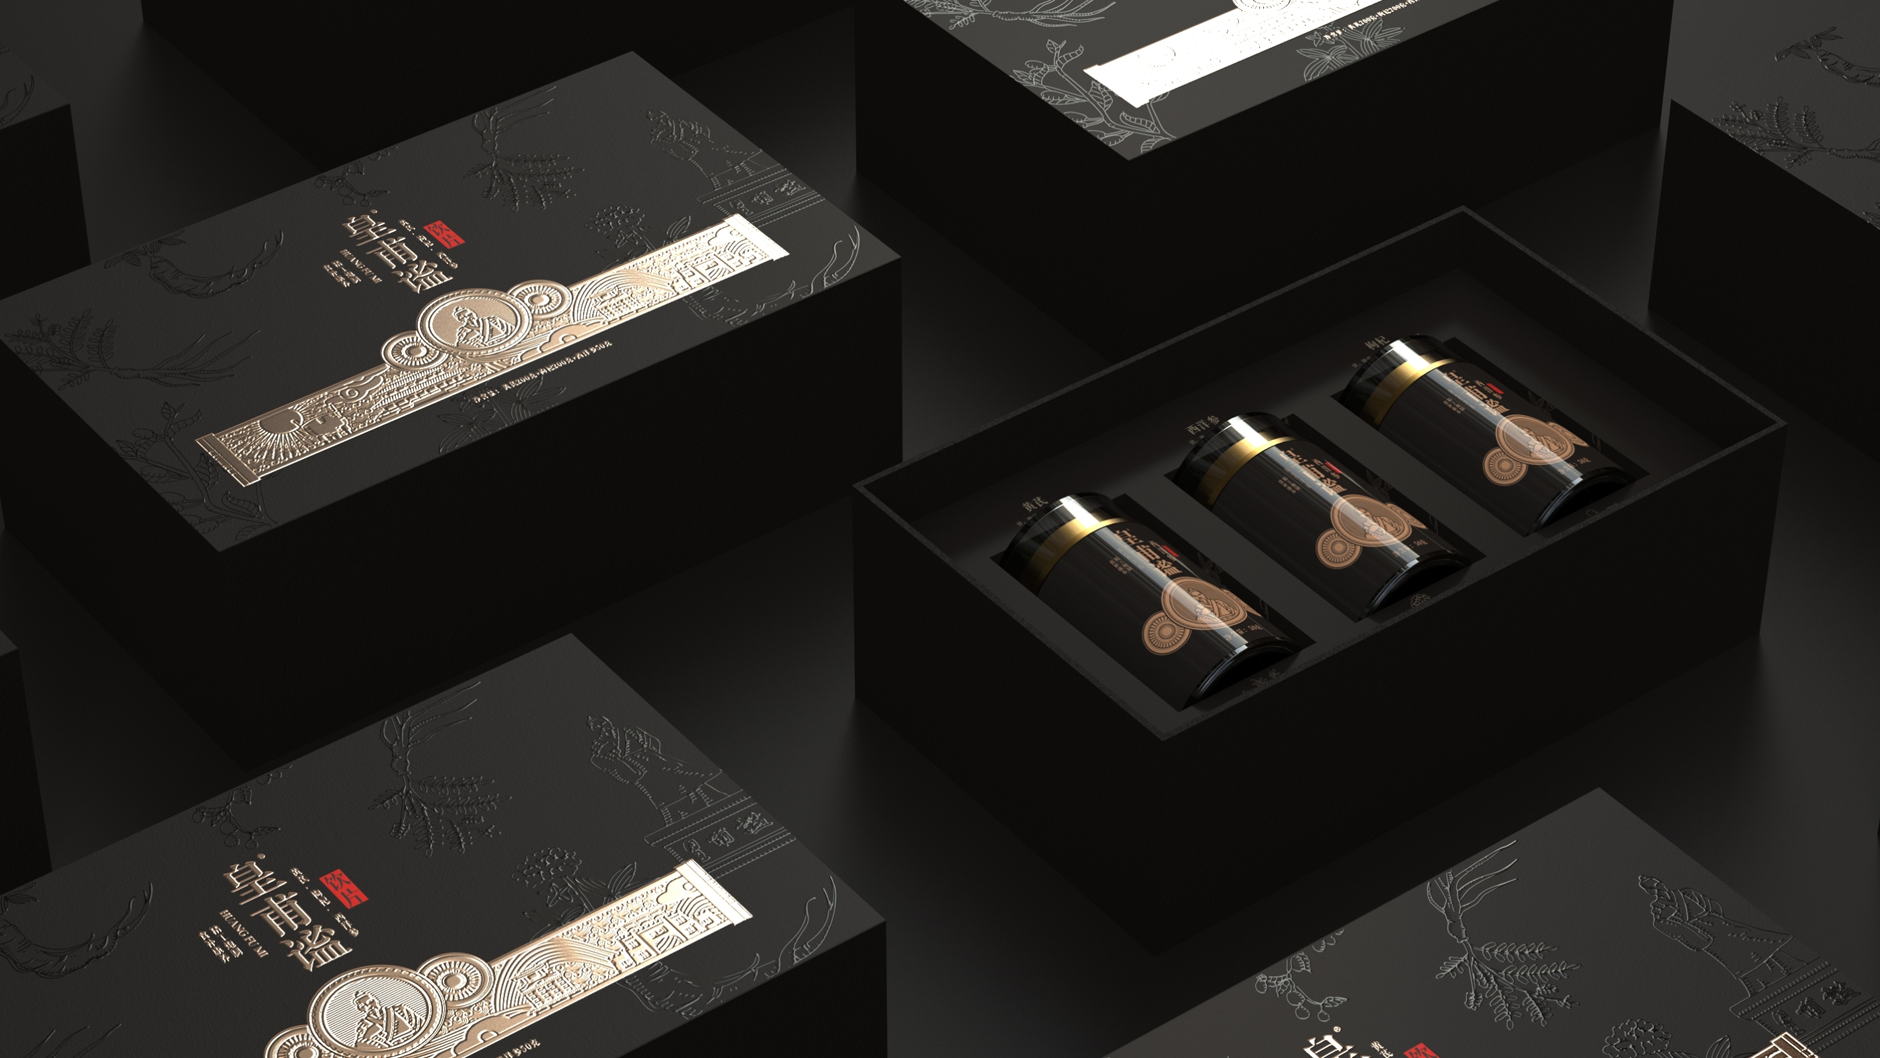 皇甫谧饮片包装设计 中药饮片包装设计 饮片礼盒包装设计